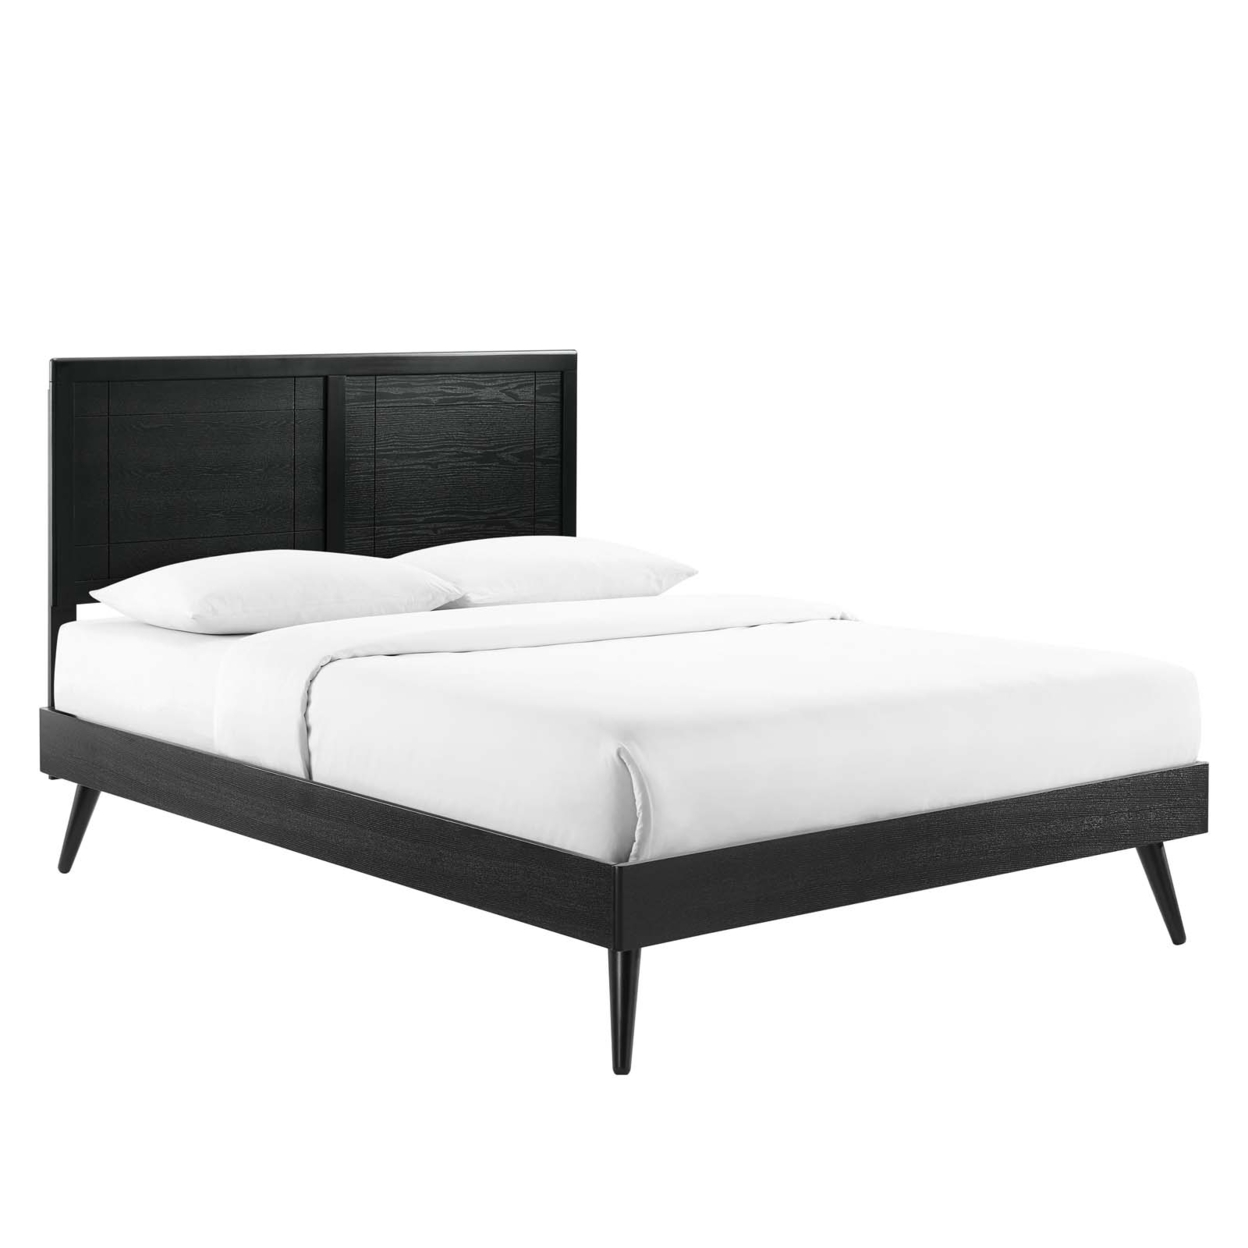 Marlee Full Wood Platform Bed With Splayed Legs, Black